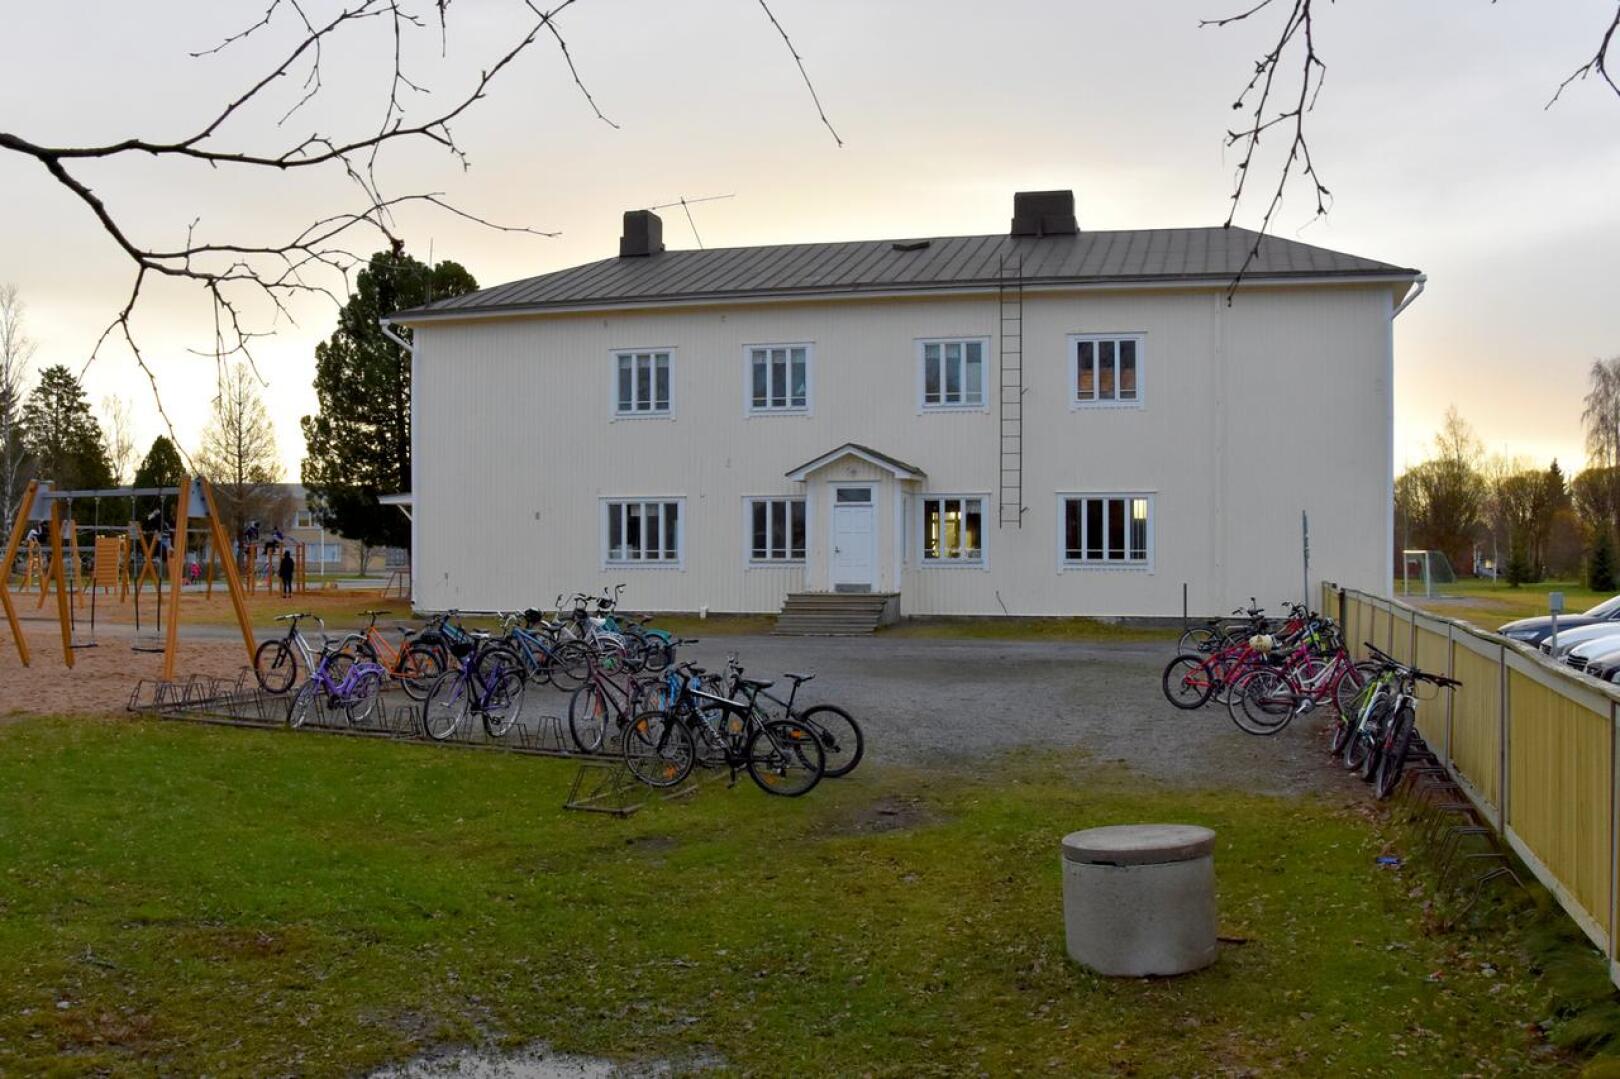 Koutosen puukoulu on rakennettu 1935. Etelä-Pohjanmaan ely-keskus on antanut rakennusperinnön suojelemisesta annetun lainmukaisen vaarantamiskieltopäätöksen koskien Koutosen koulua.